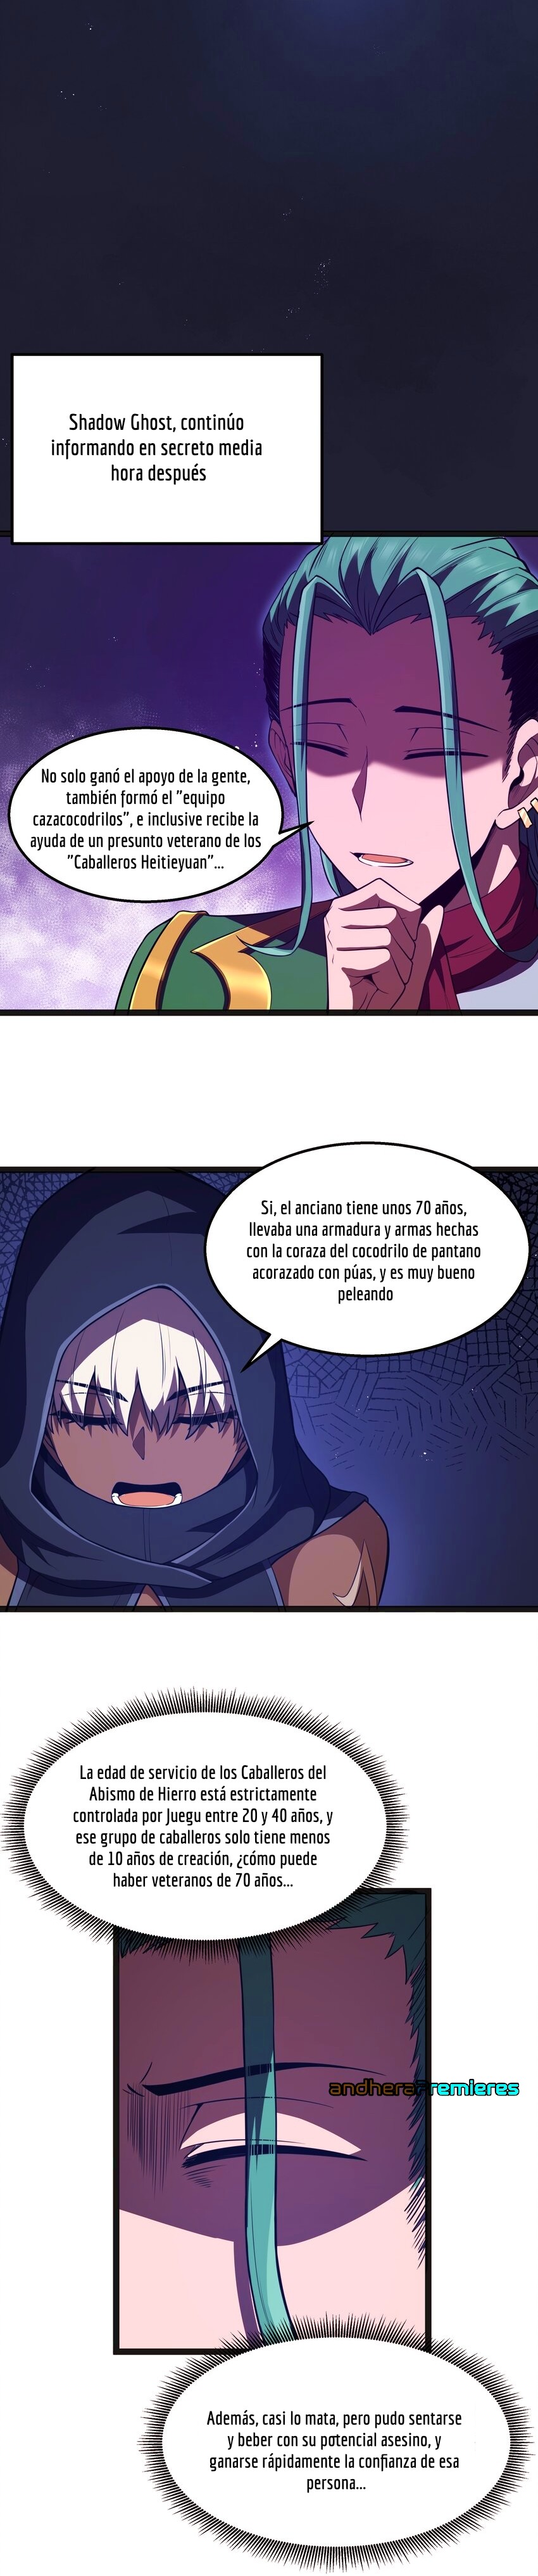 Manga El Héroe de la Avaricia Chapter 21 image number 16